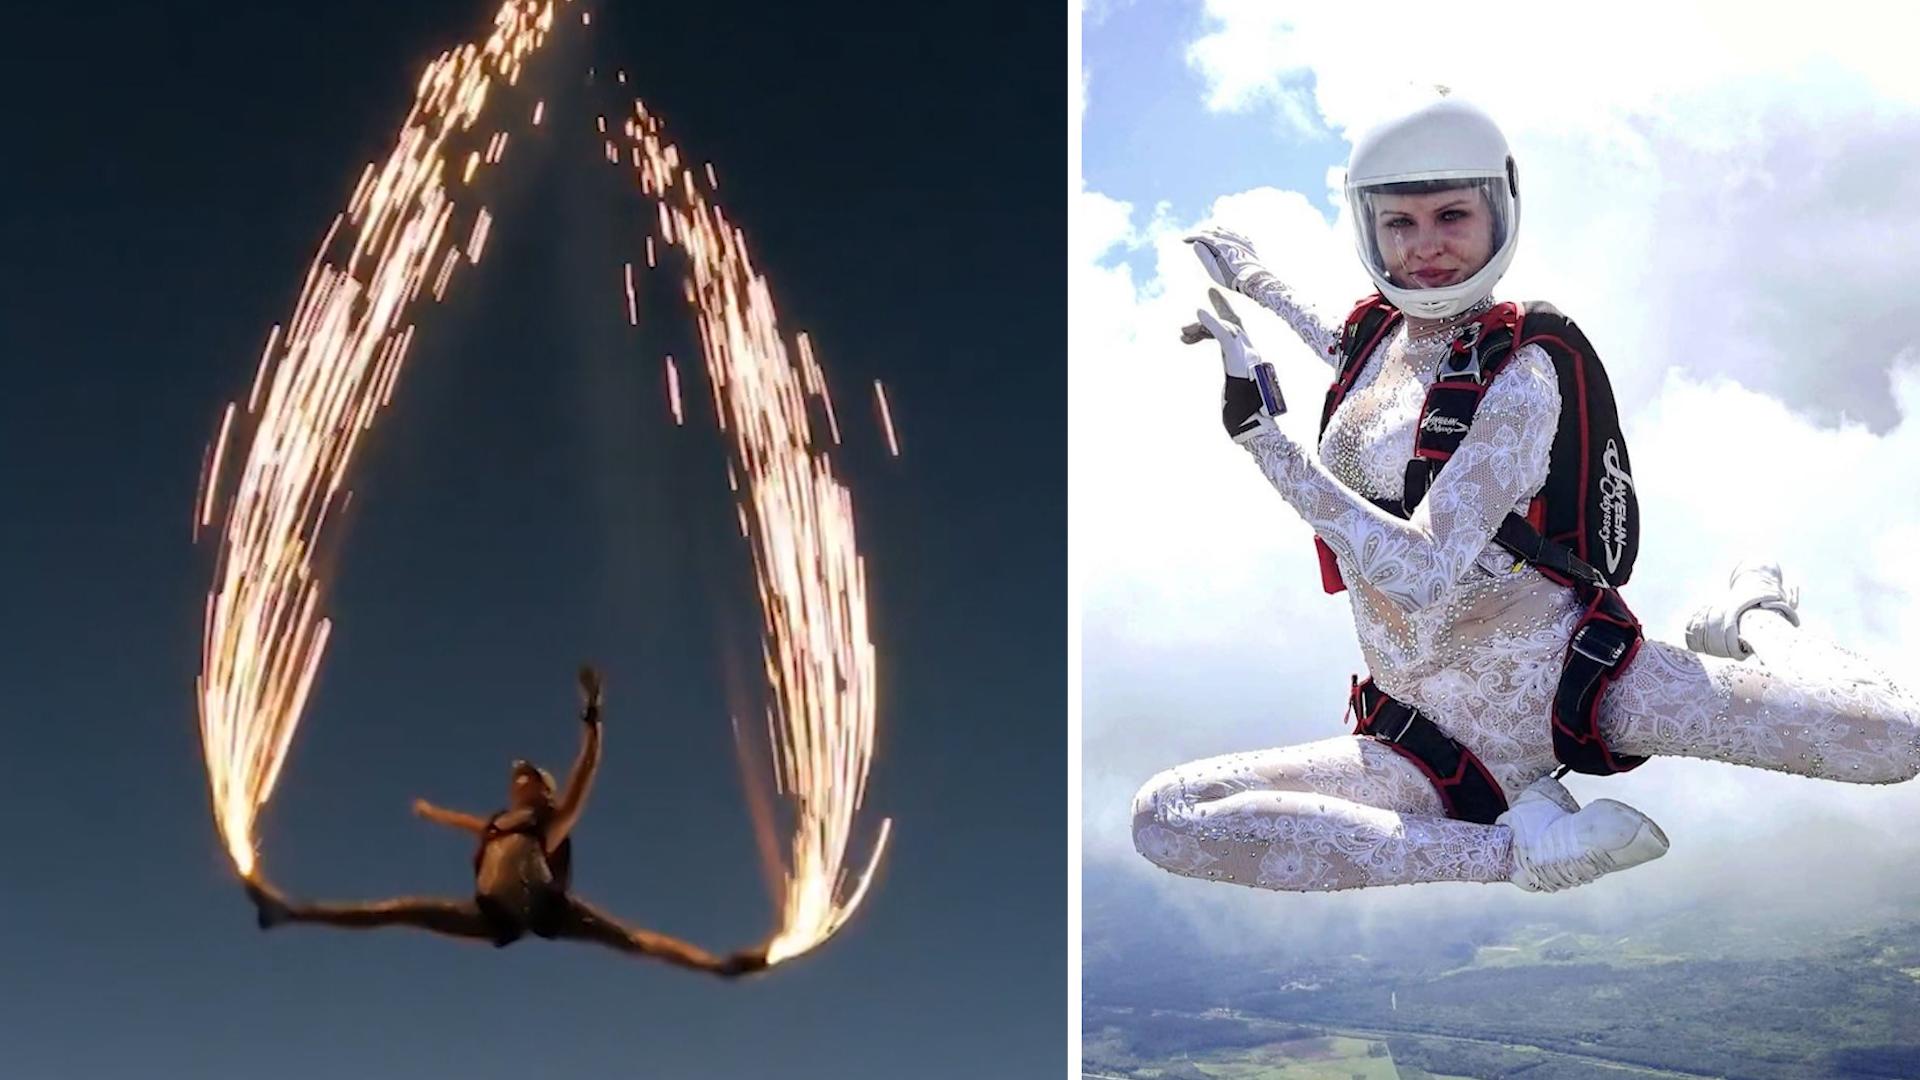 Feuerregen im Spagat: Skydiverin legt heiße Luftshow hin Svetlana bringt den Himmel zum Brennen